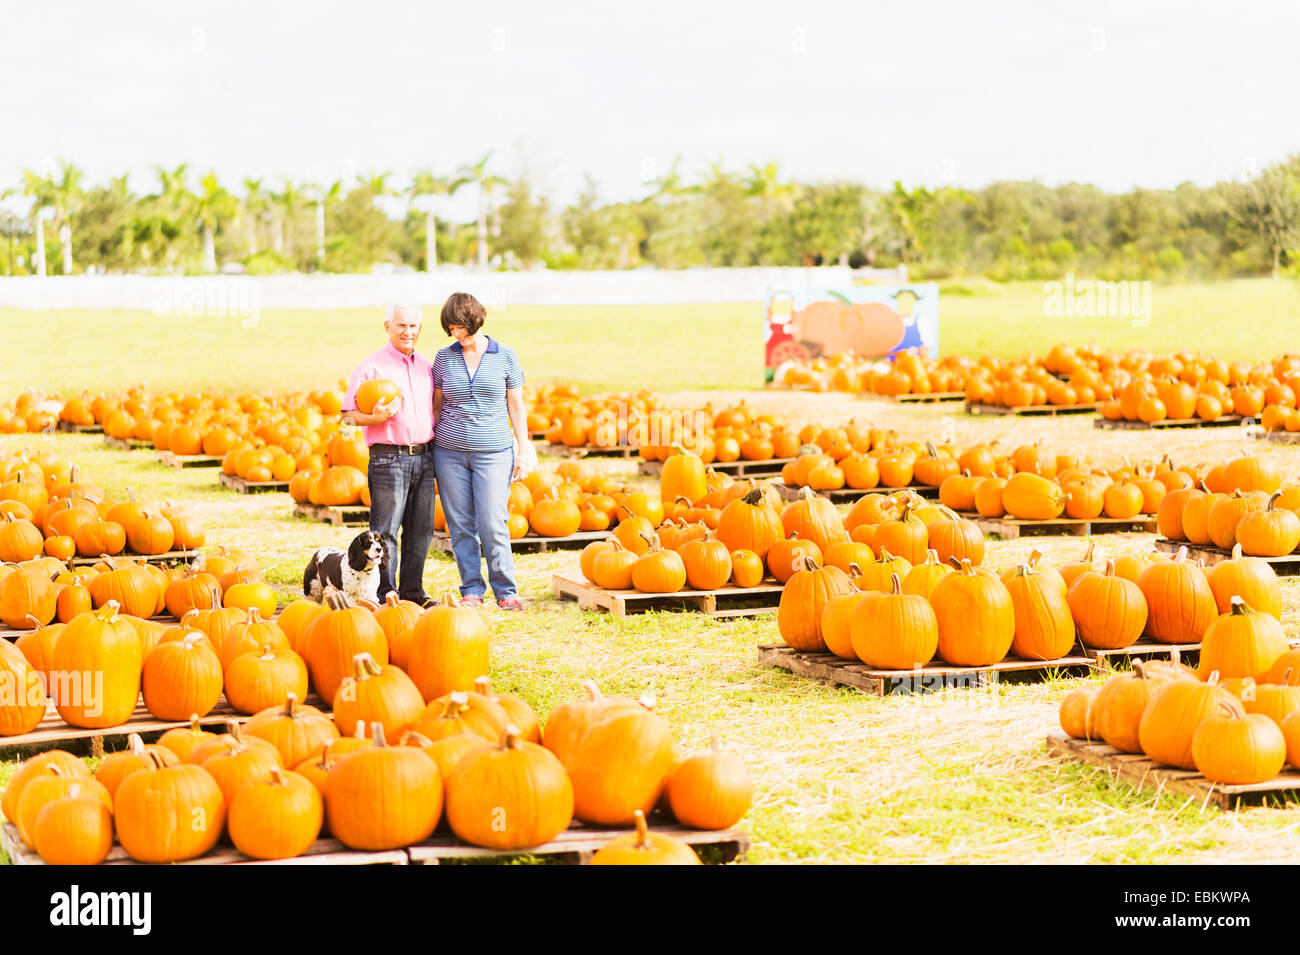 USA, Floride, Jupiter, Portrait de couple standing in Pumpkin Patch Banque D'Images